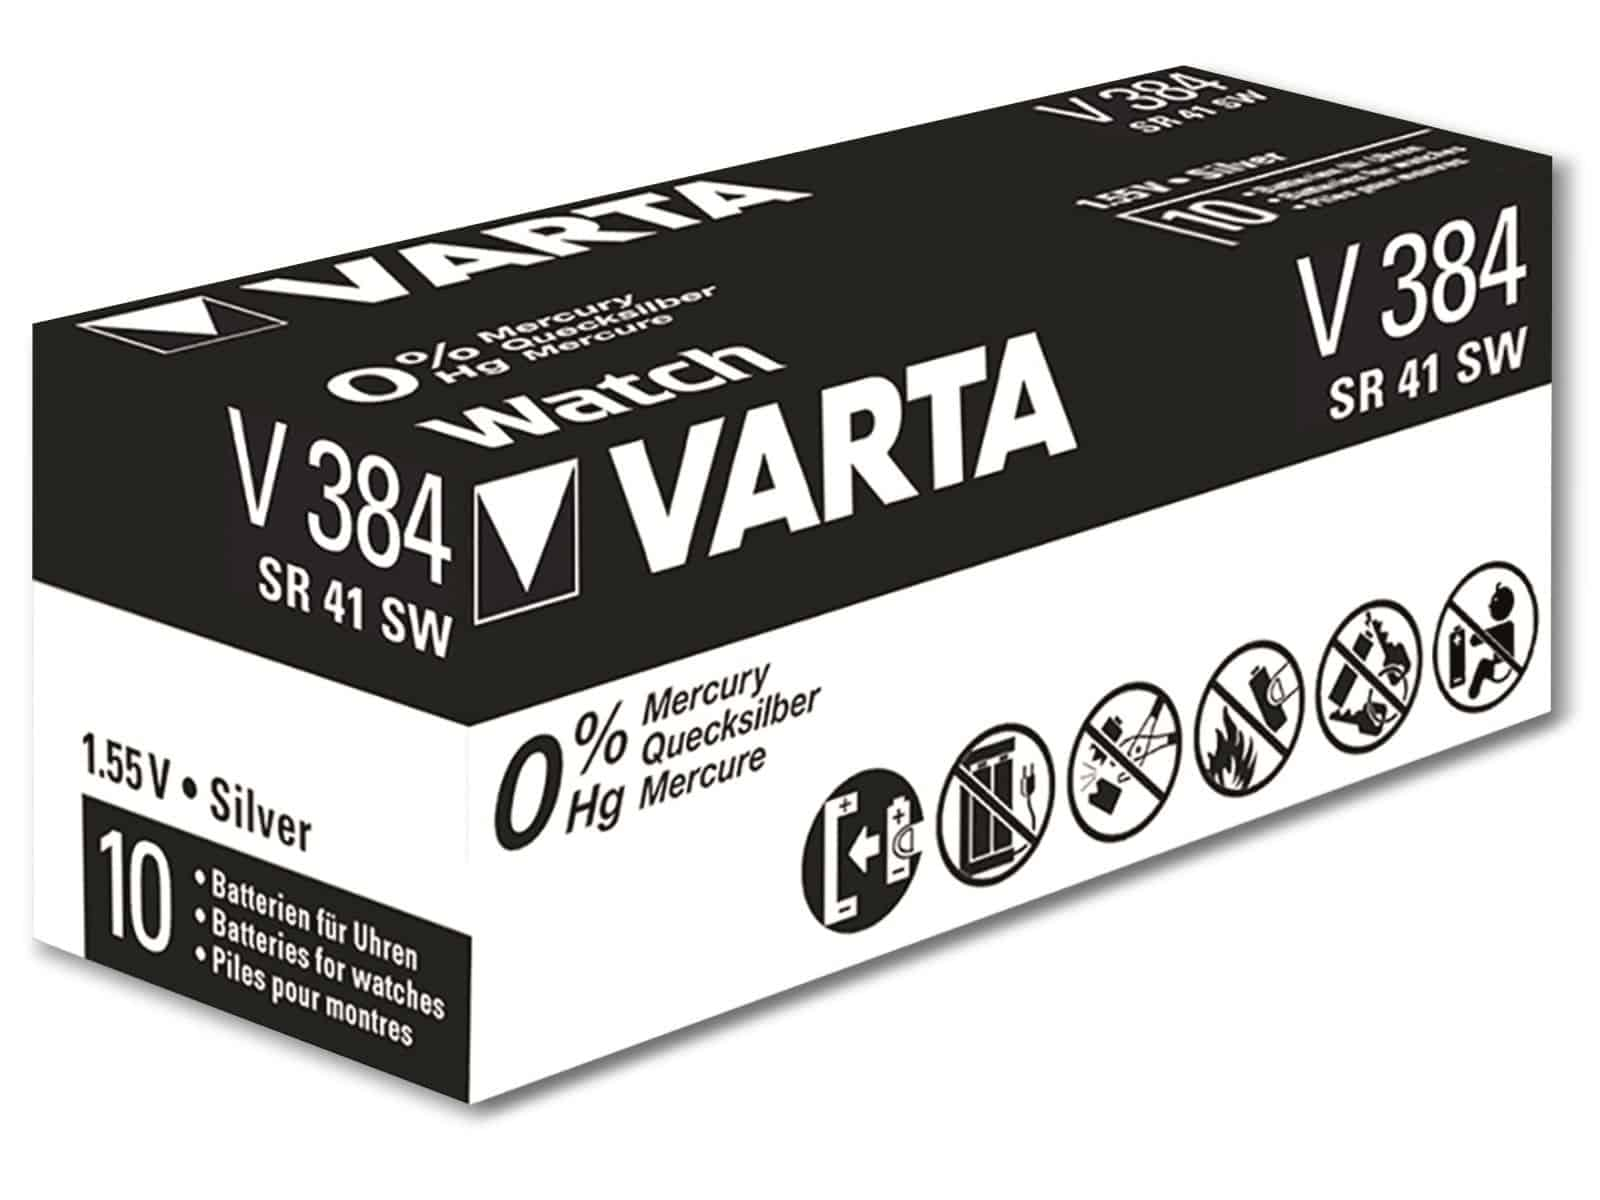 Silver Silberoxid VARTA 384 Stück Knopfzelle SR41, Knopfzelle 1.55V, Oxide, 10